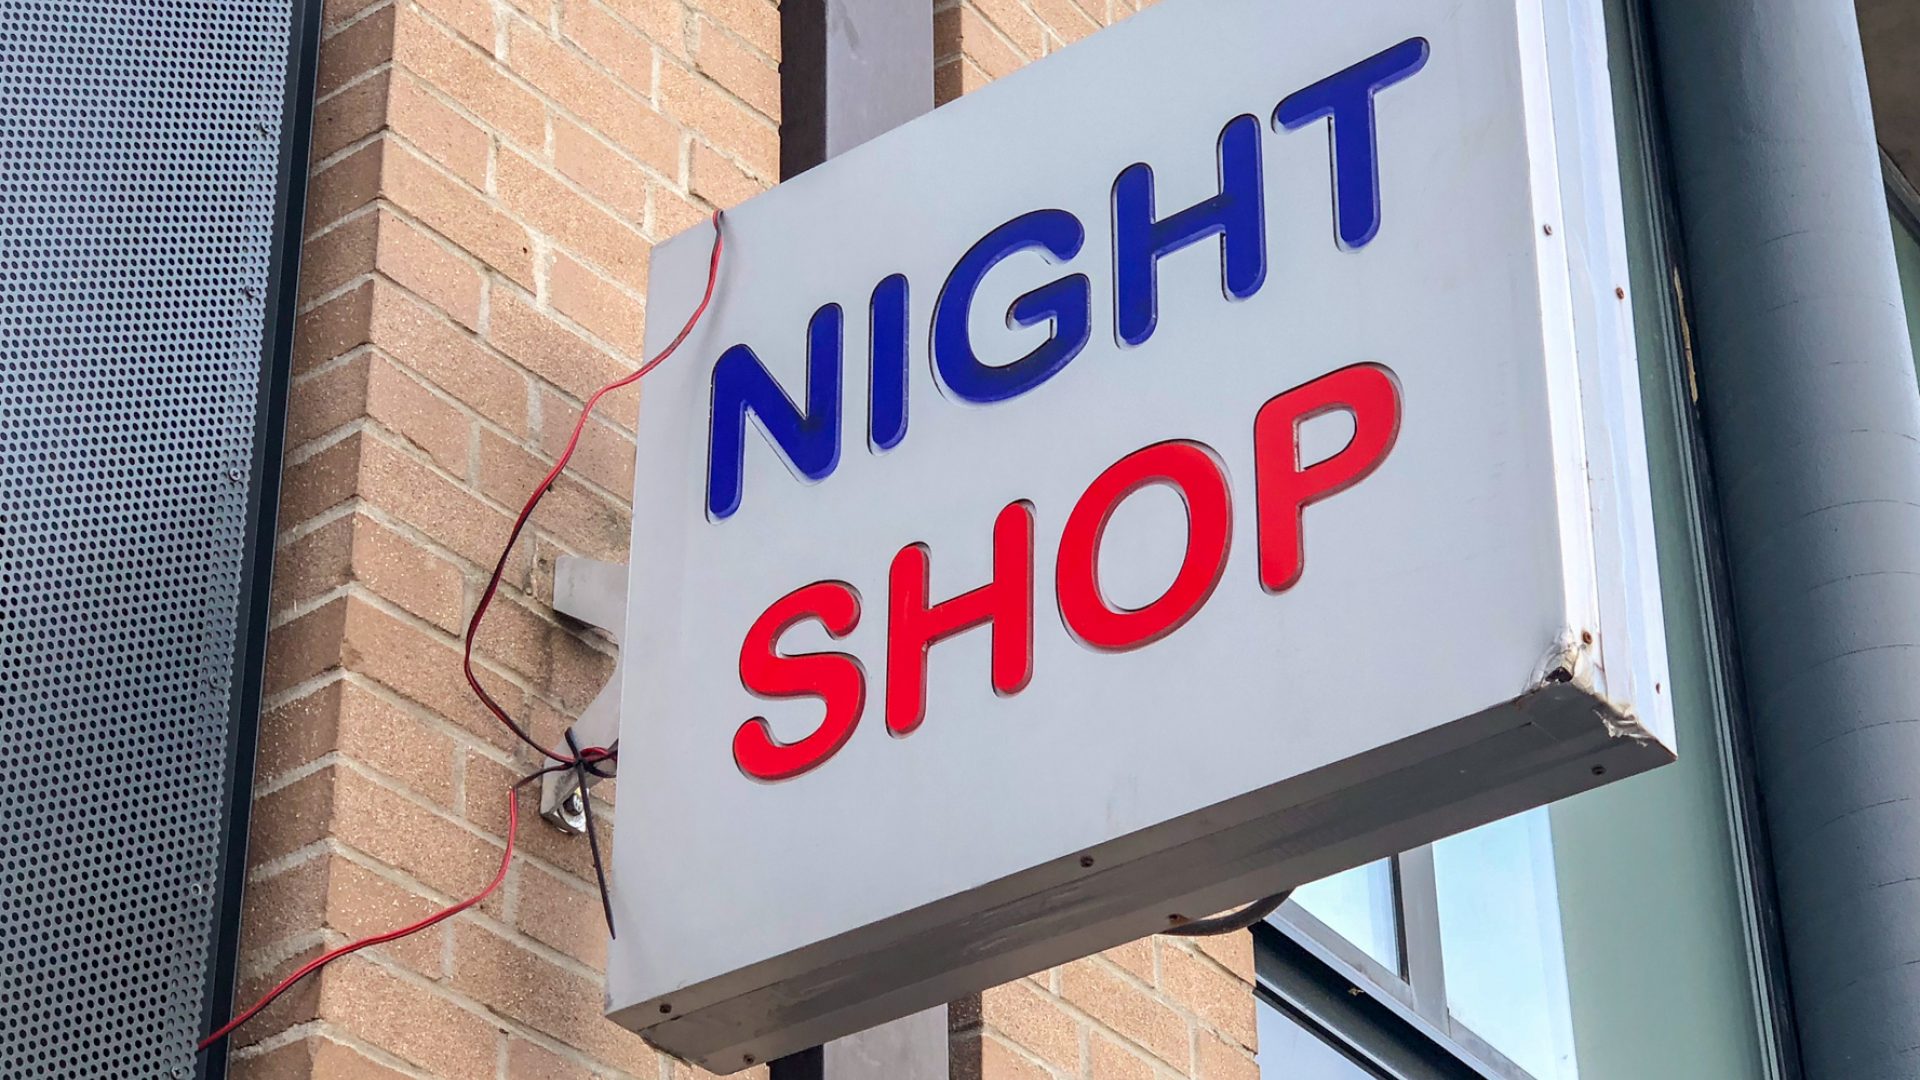 Night Shop Heerlen